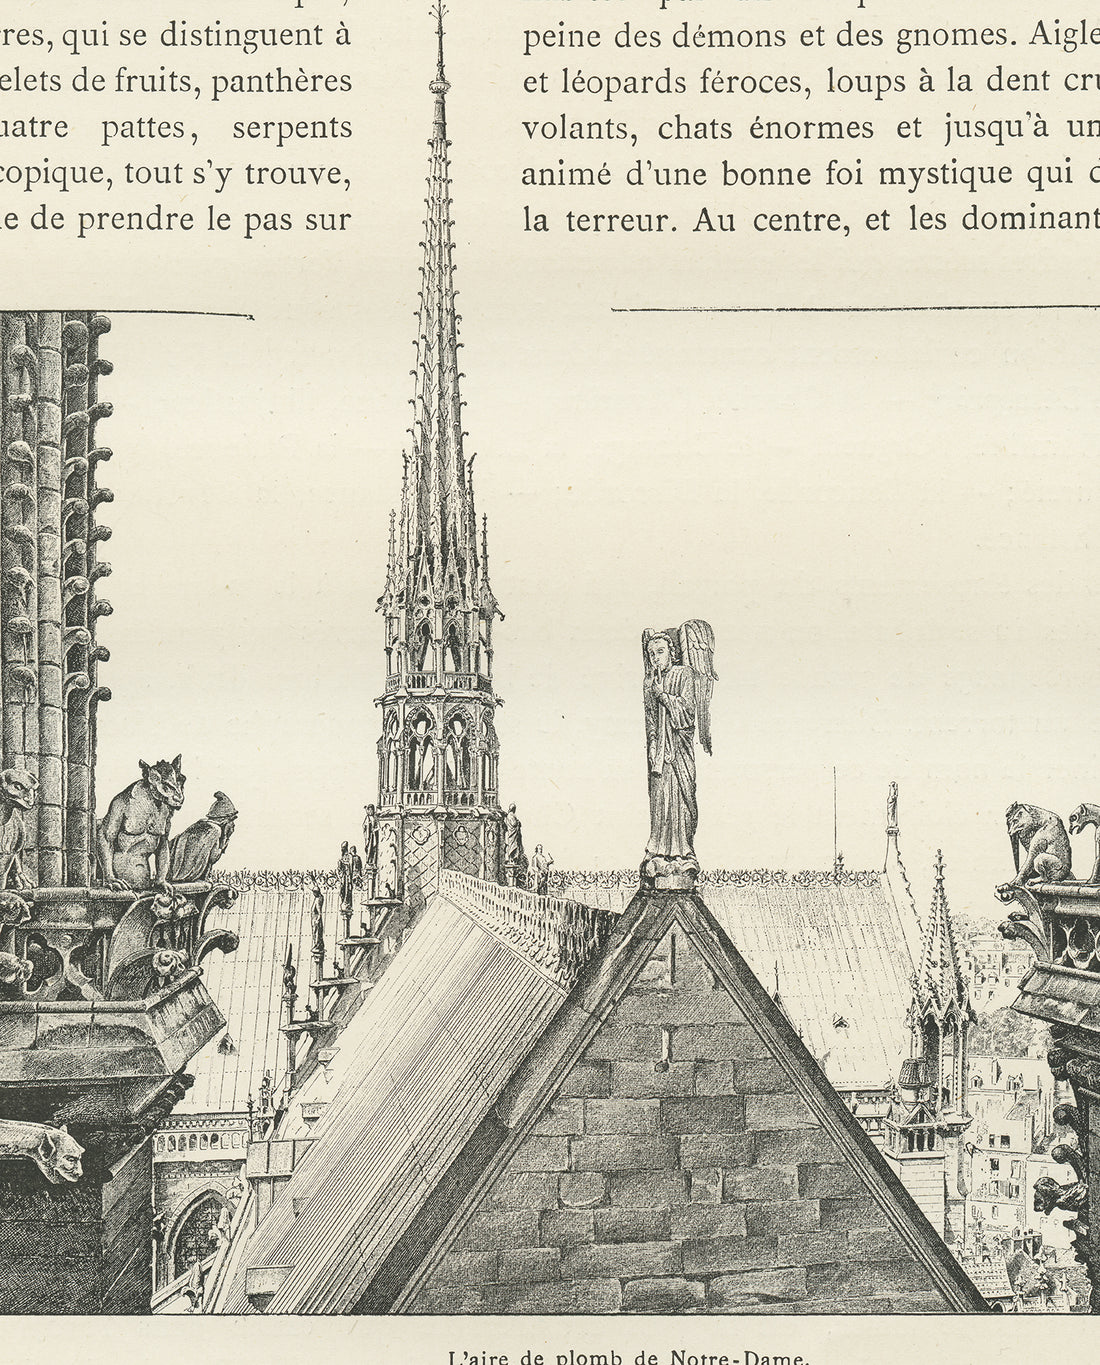 Notre Dame de Paris should reopen in 2024